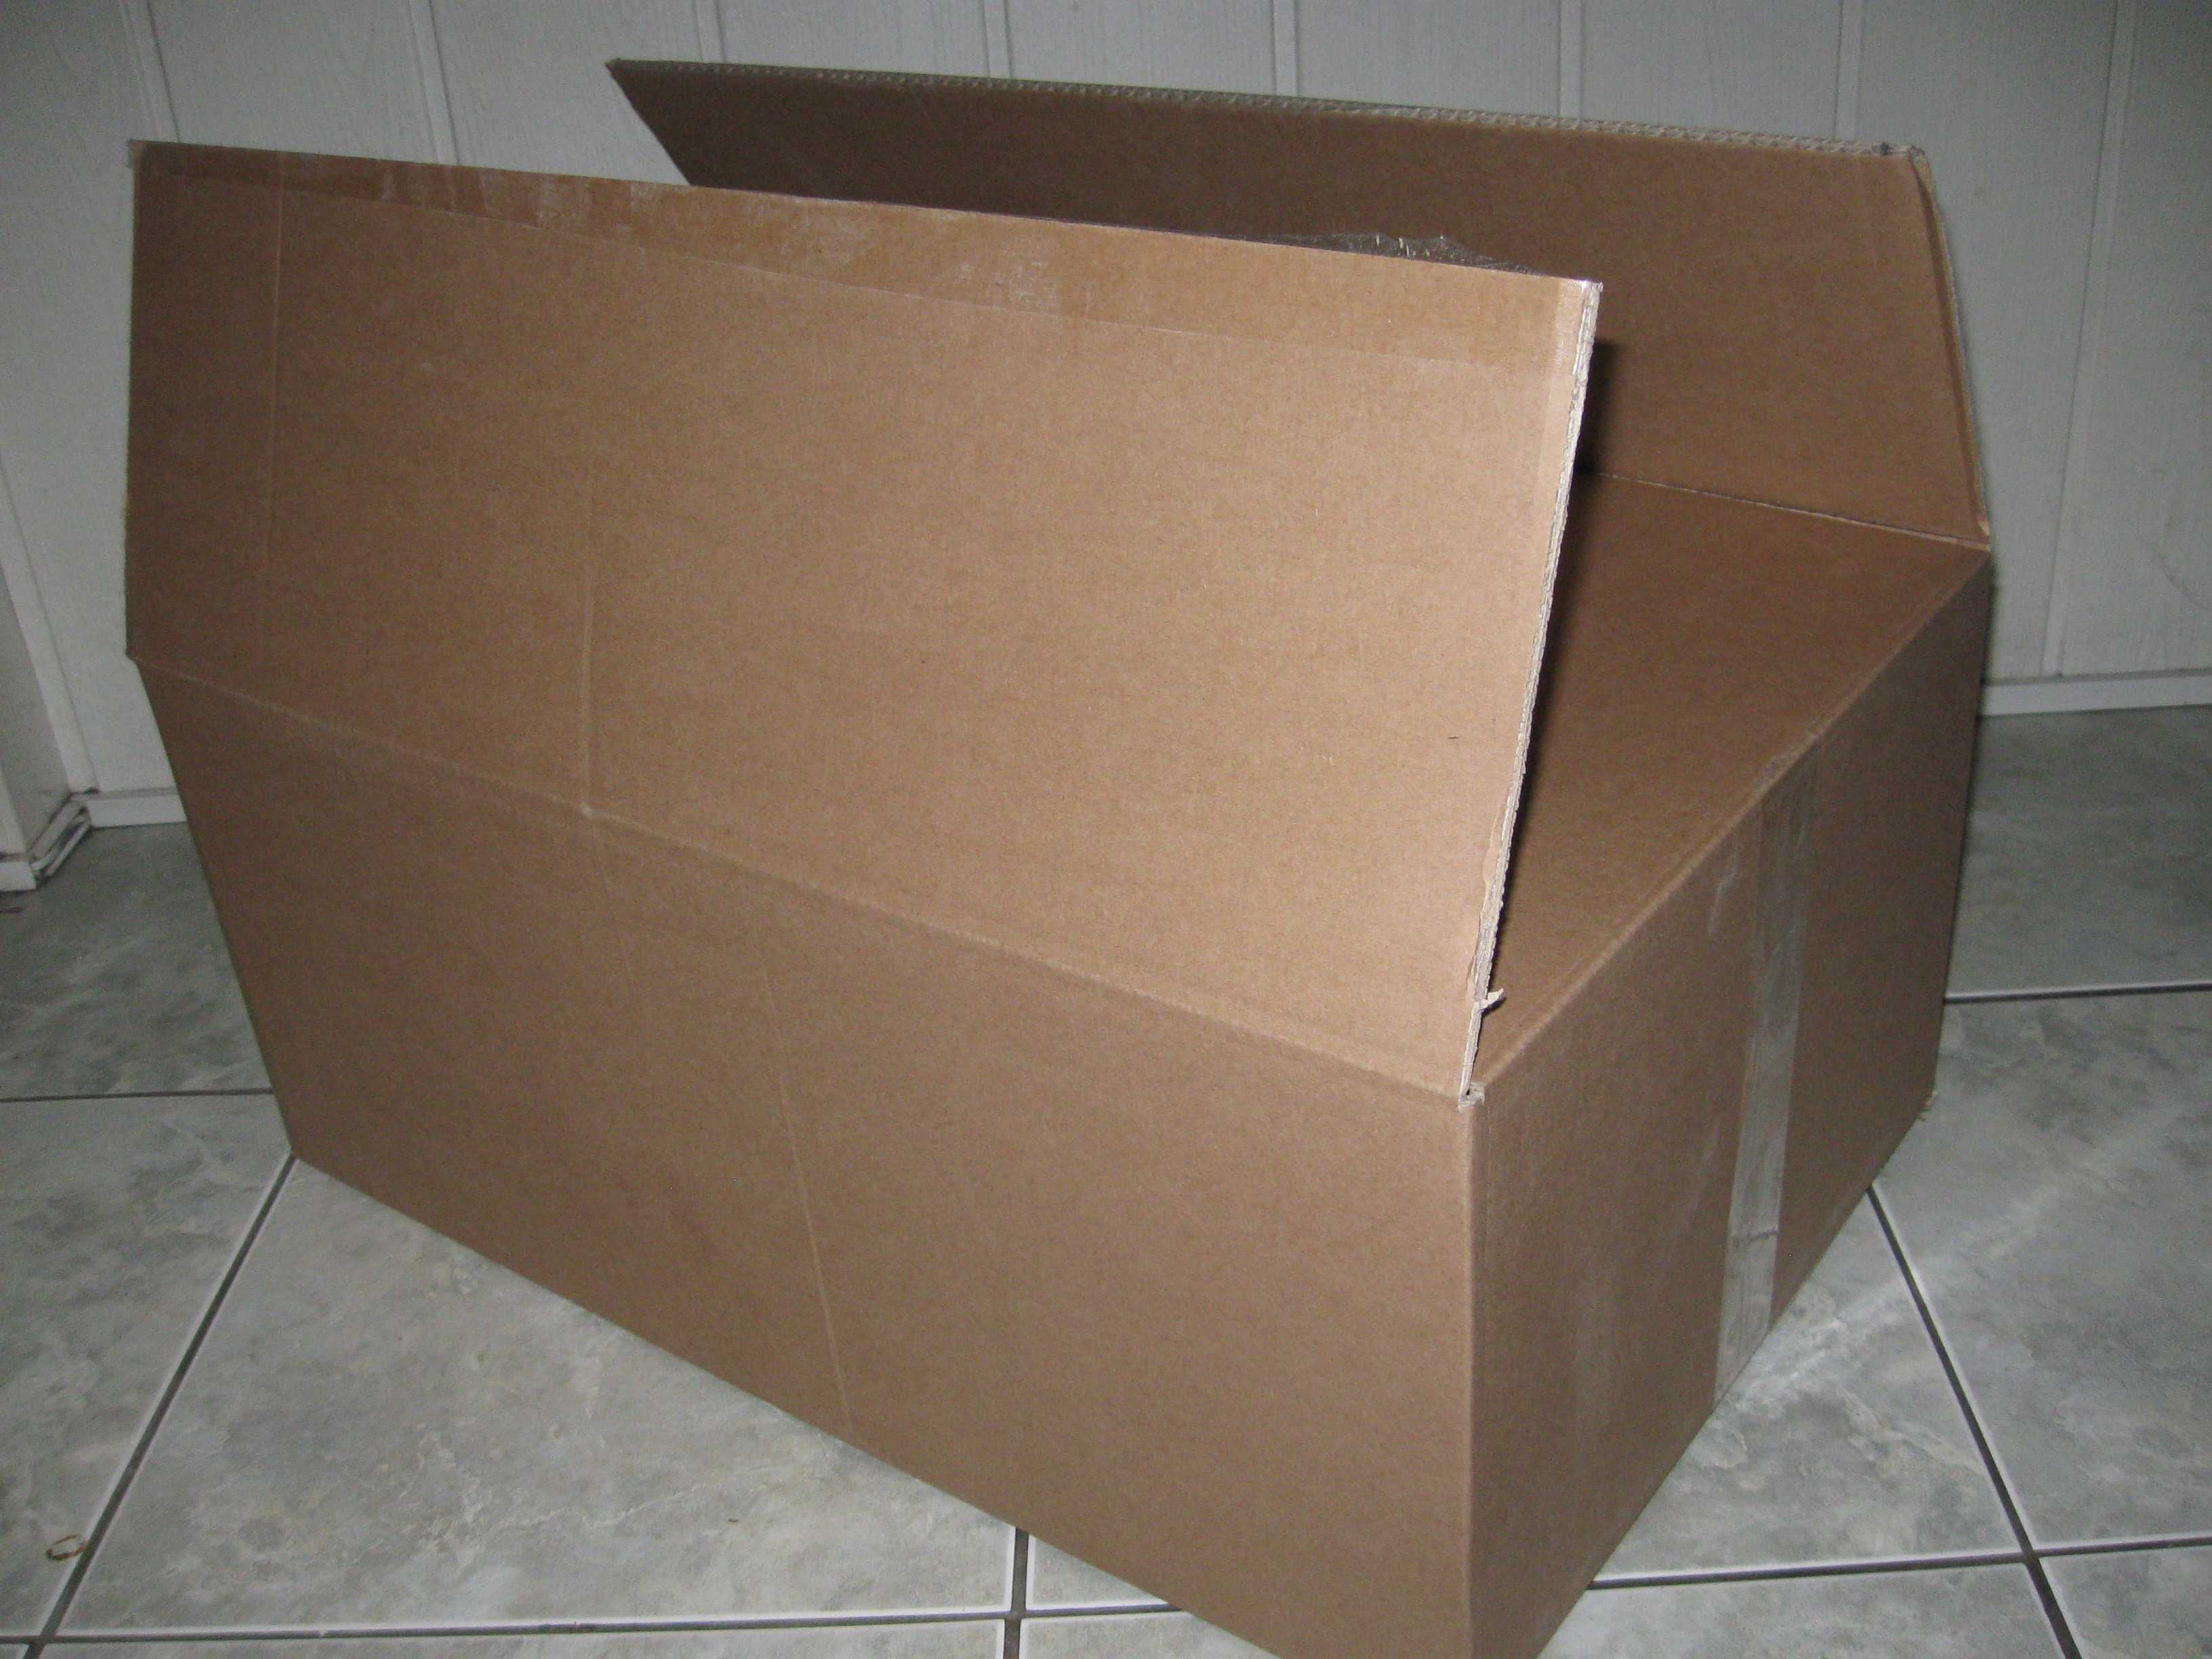 Karton pudło przeprowadzka wysyłka paczkomat C 5 warstw 59x39x25